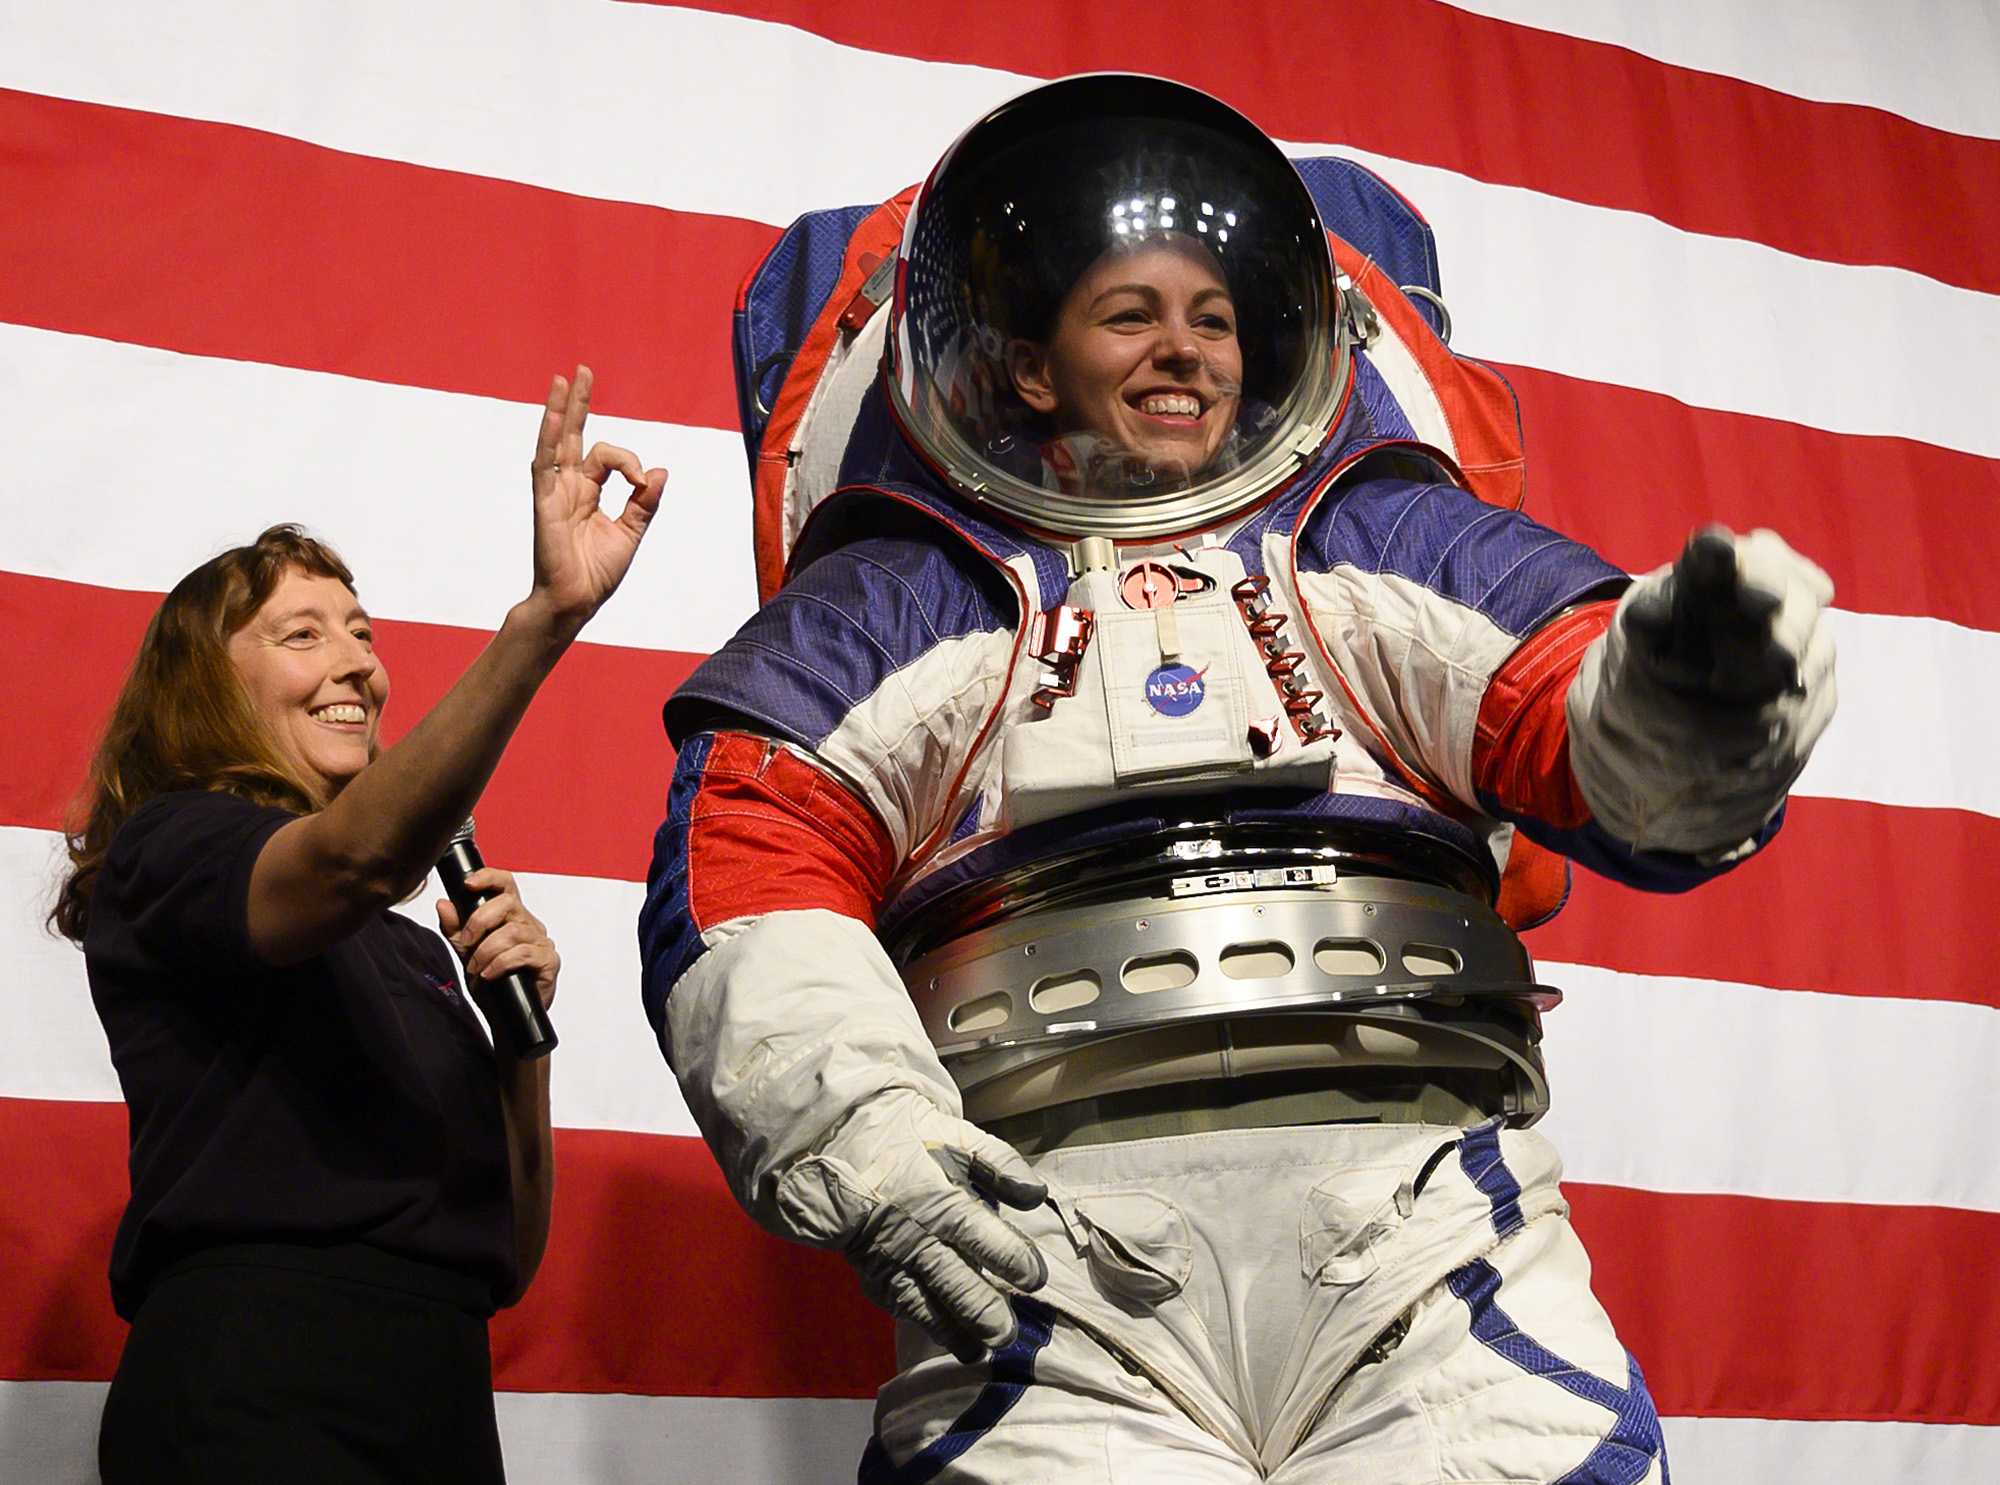 지난해 10월 차세대 우주복을 공개 행사가 열린 미 워싱턴 나사 본부에서 여성 우주인 크리스틴 댄스가 신형우주복인 'xEMU'(Exploration Extravehicular Mobility Unit)를 입고 있다. [AFP=연합뉴스]